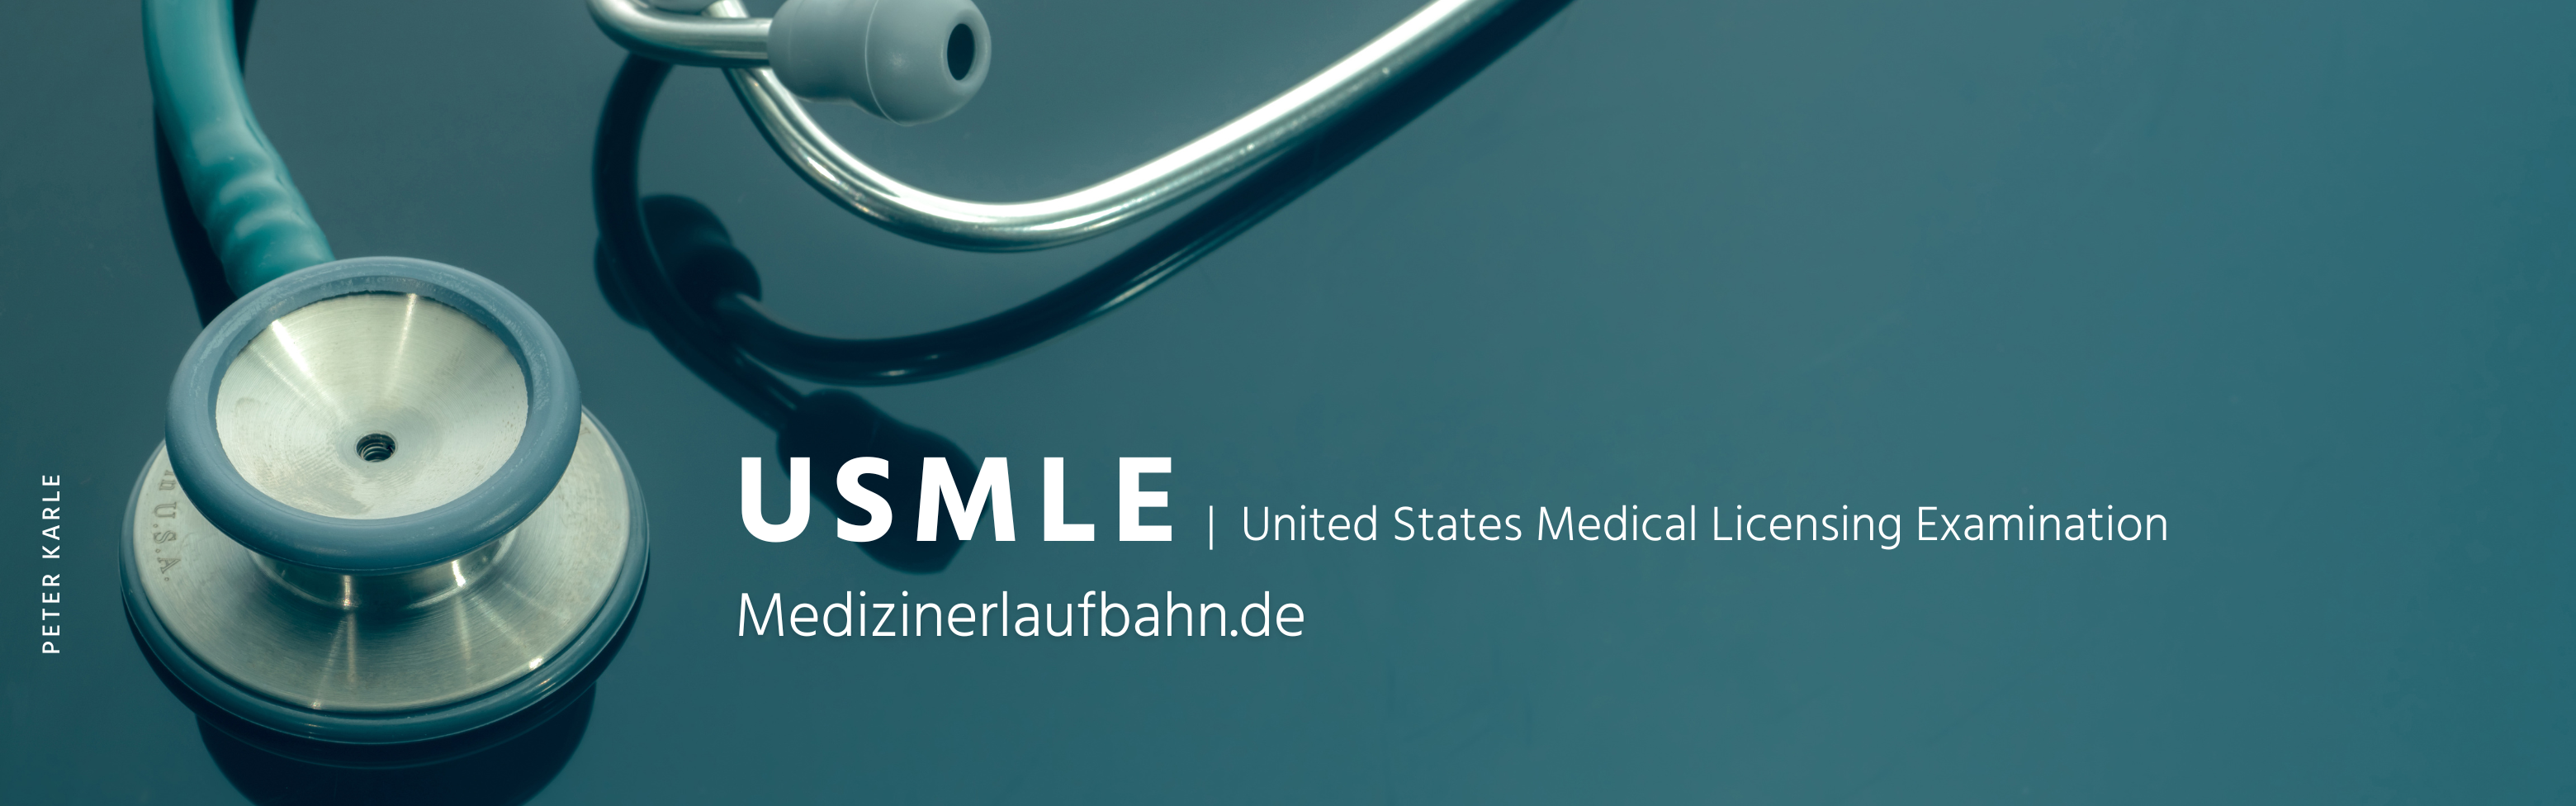 USMLE - Medizinerlaufbahn.de Blog